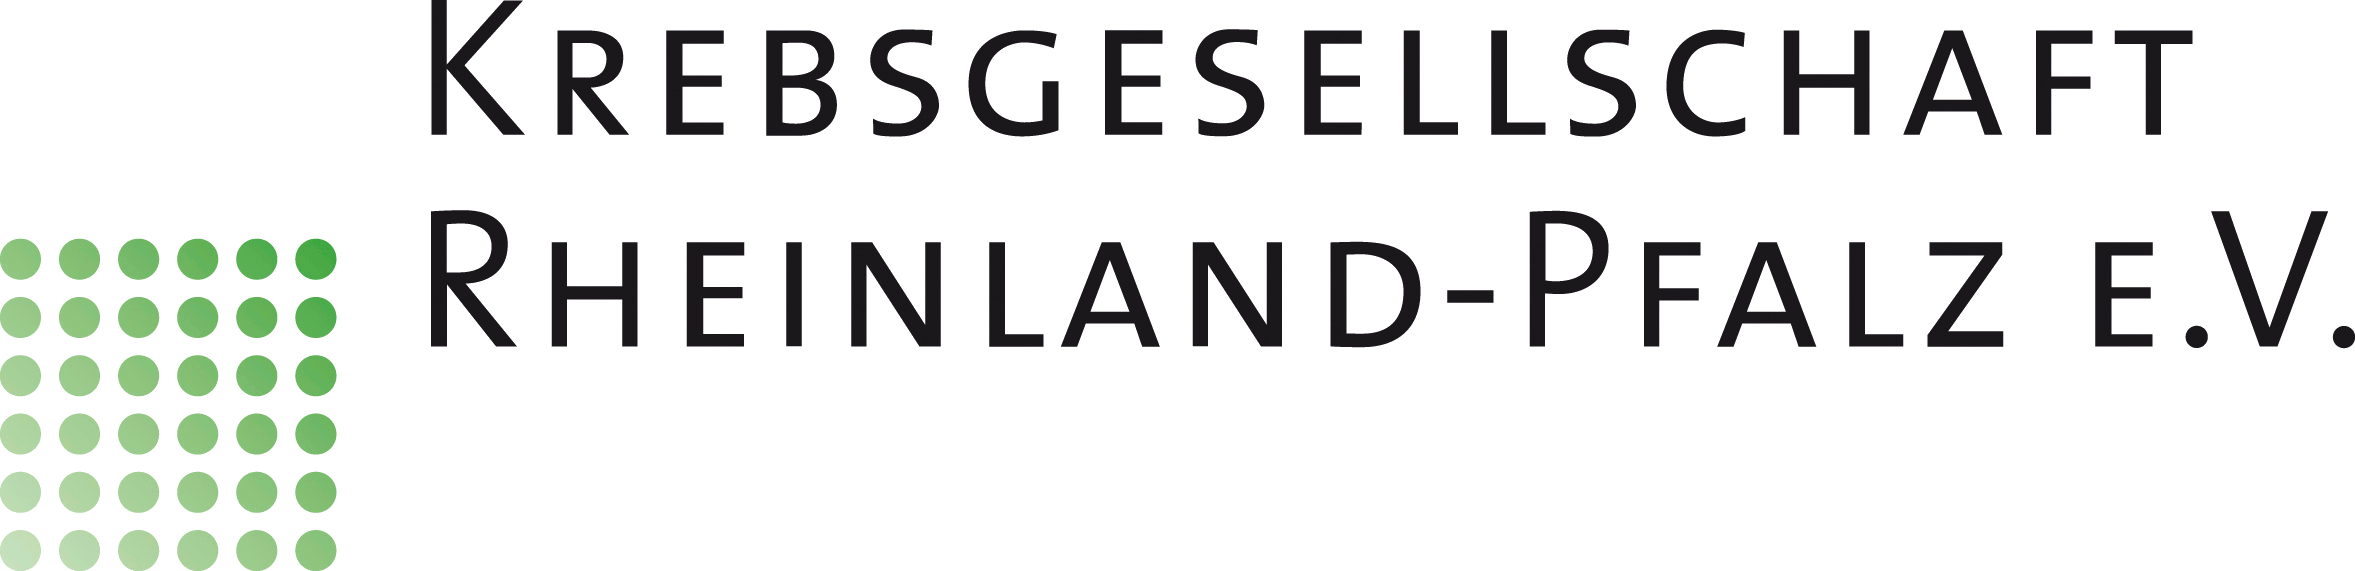 Krebsgesellschaft Rheinland-Pfalz e.V. Logo